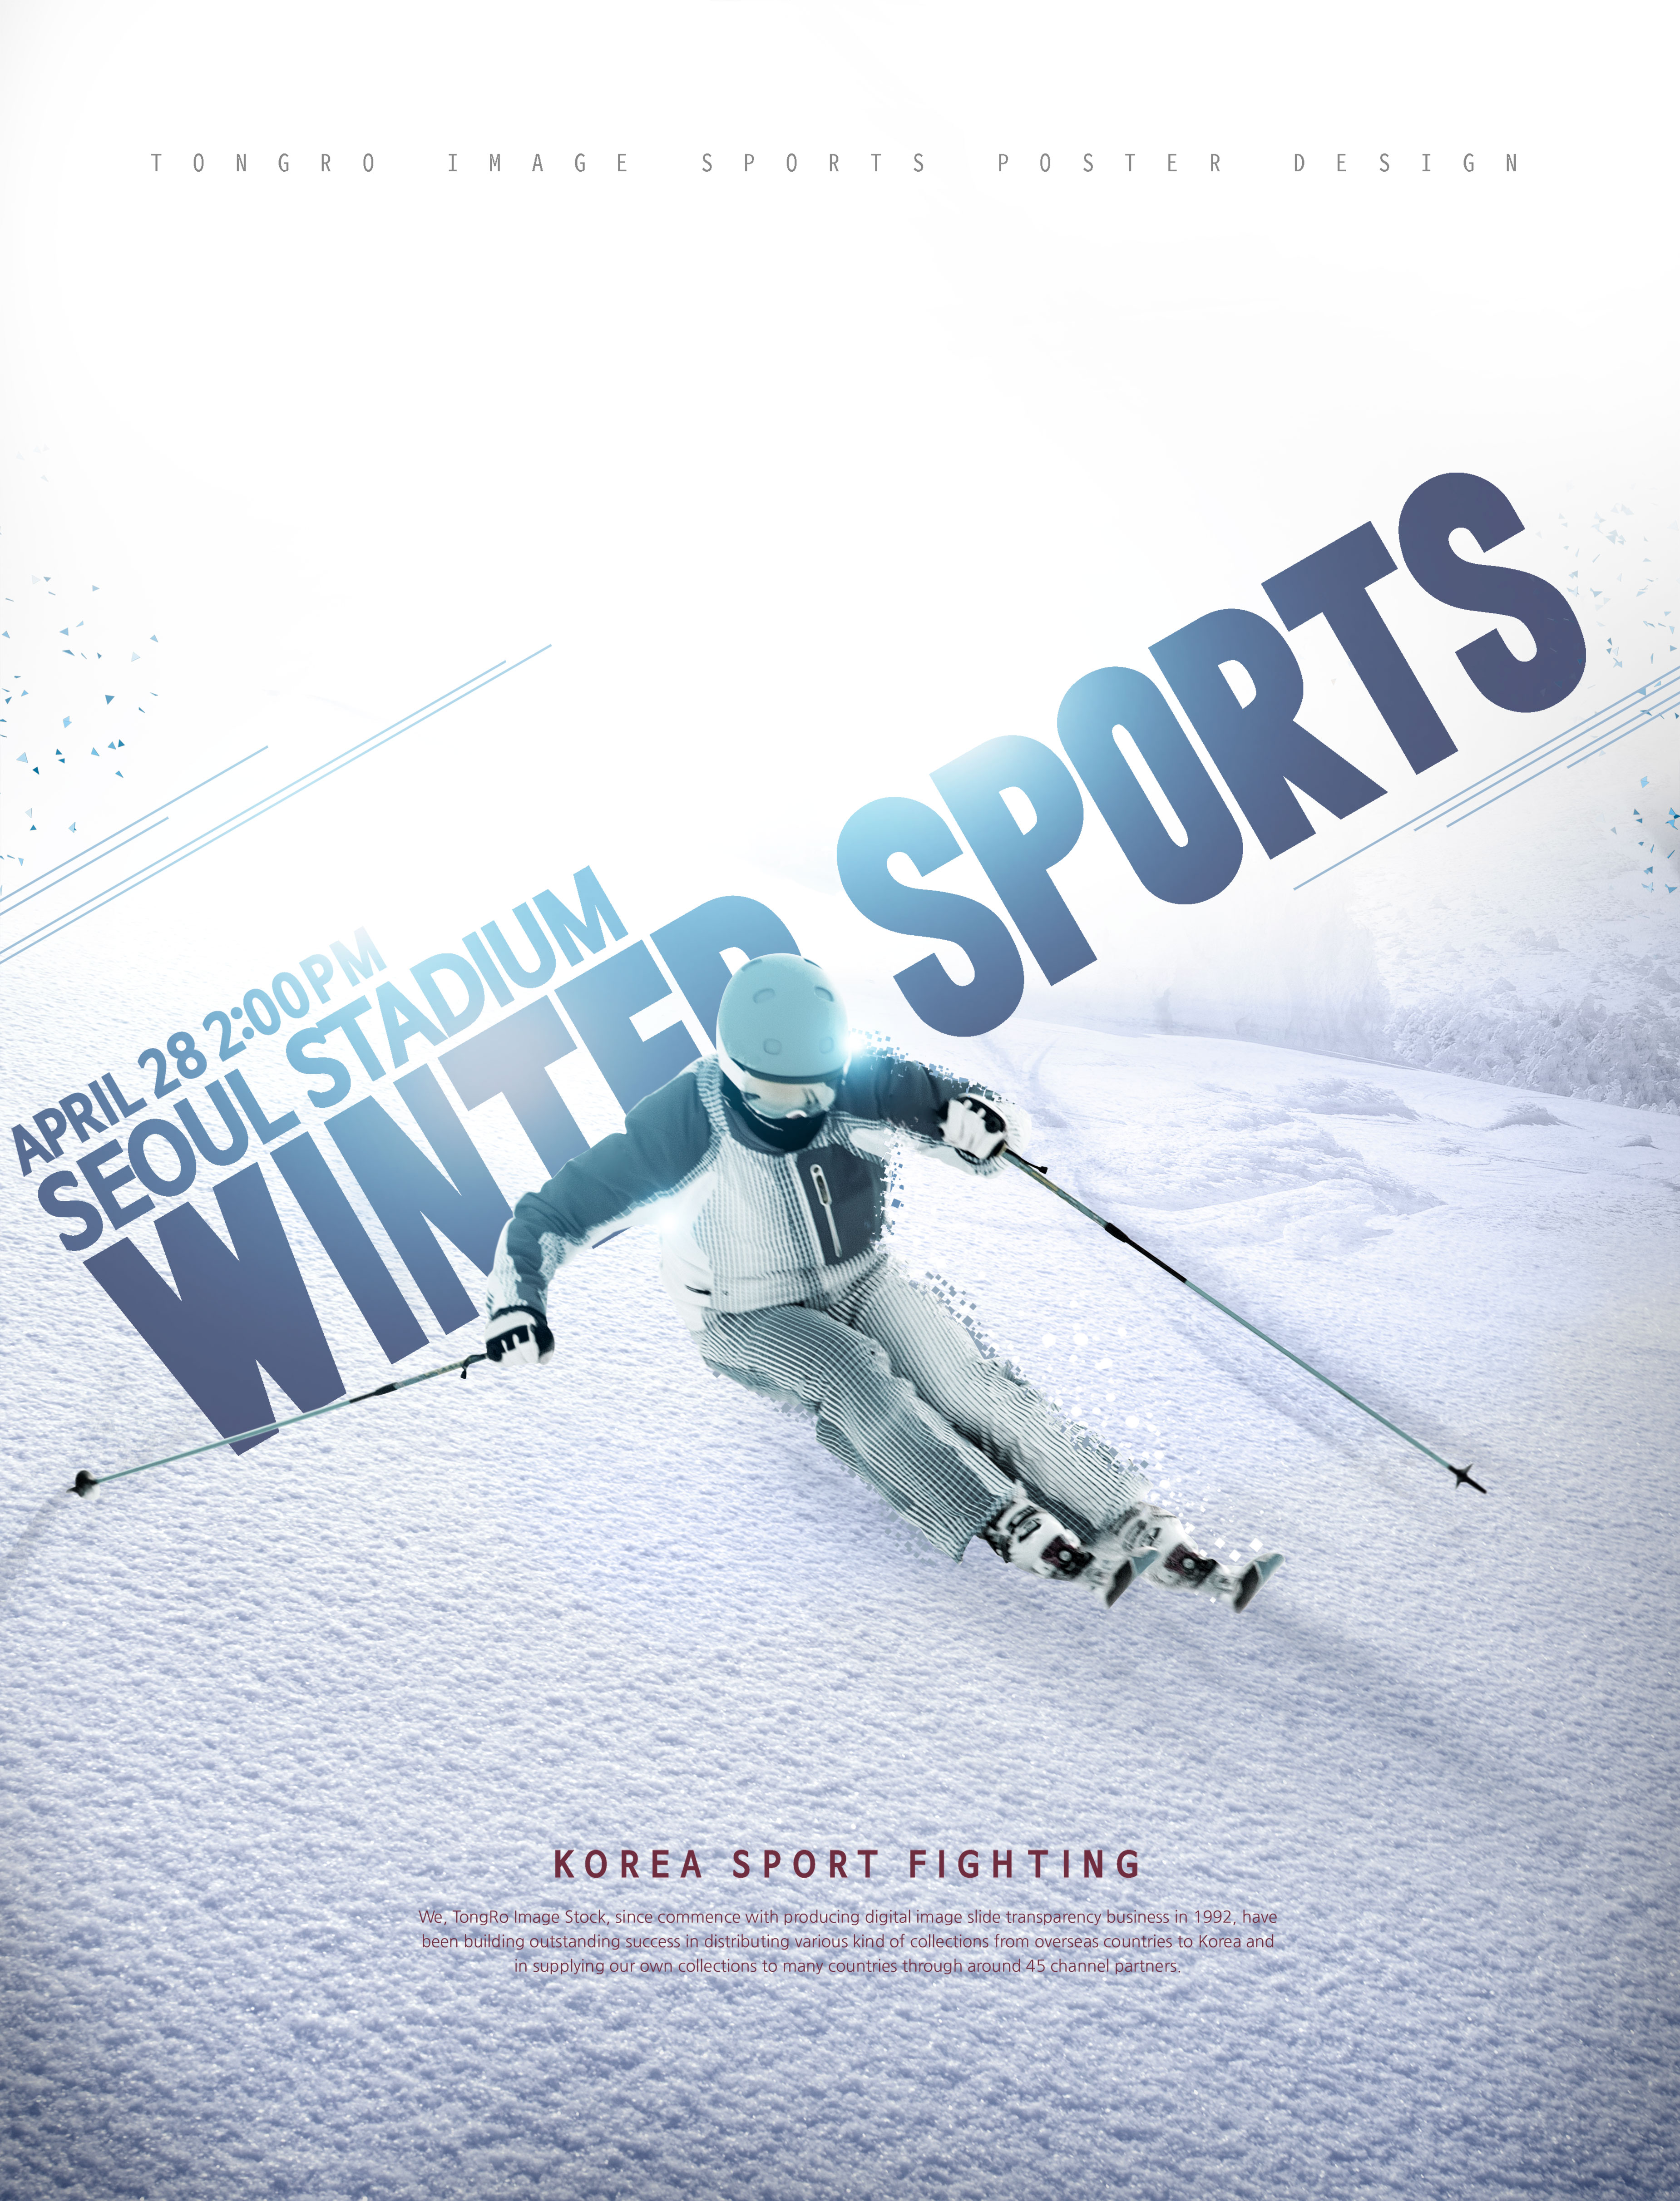 冬季滑雪体育运动推广海报PSD素材素材库精选素材插图